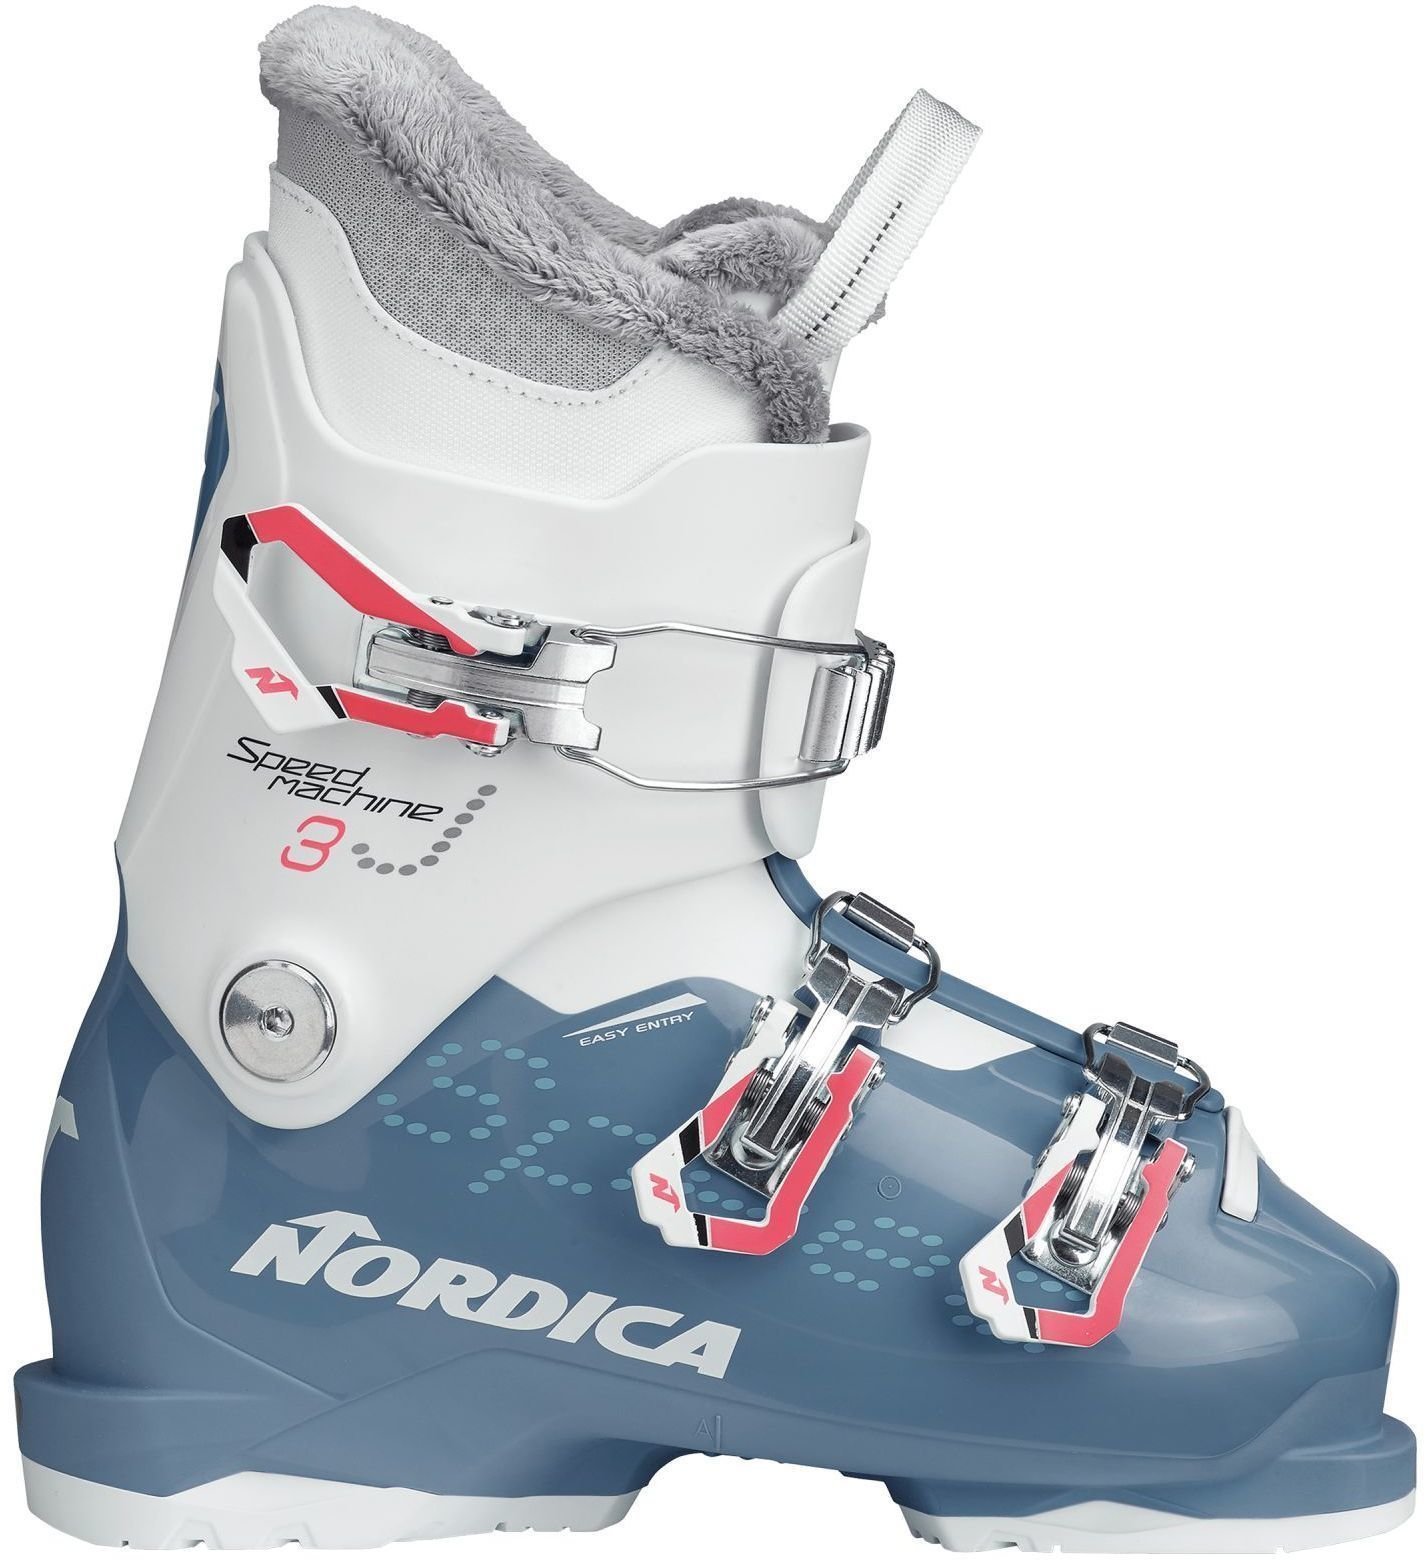 Alpin-Skischuhe Nordica Speedmachine J3 Light Blue/White 200 Alpin-Skischuhe